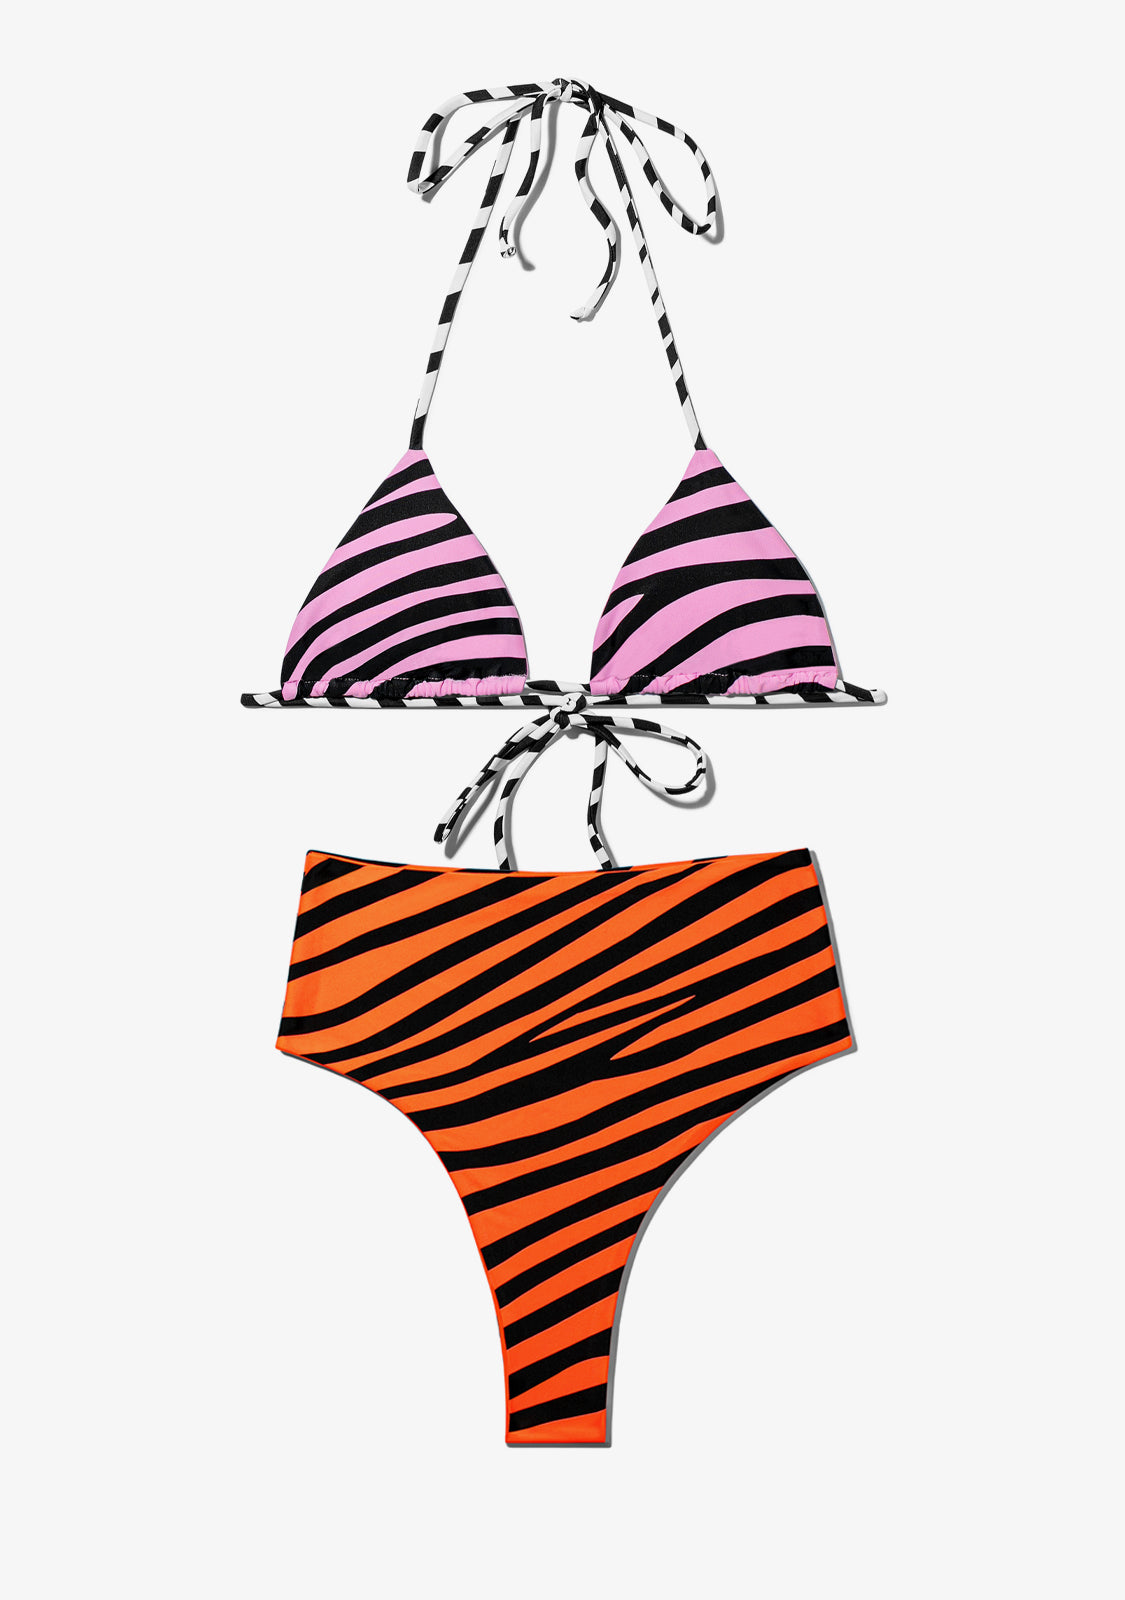 Samoa Top Zebra Pink + Maui Bottom Zebra Orange Bikini